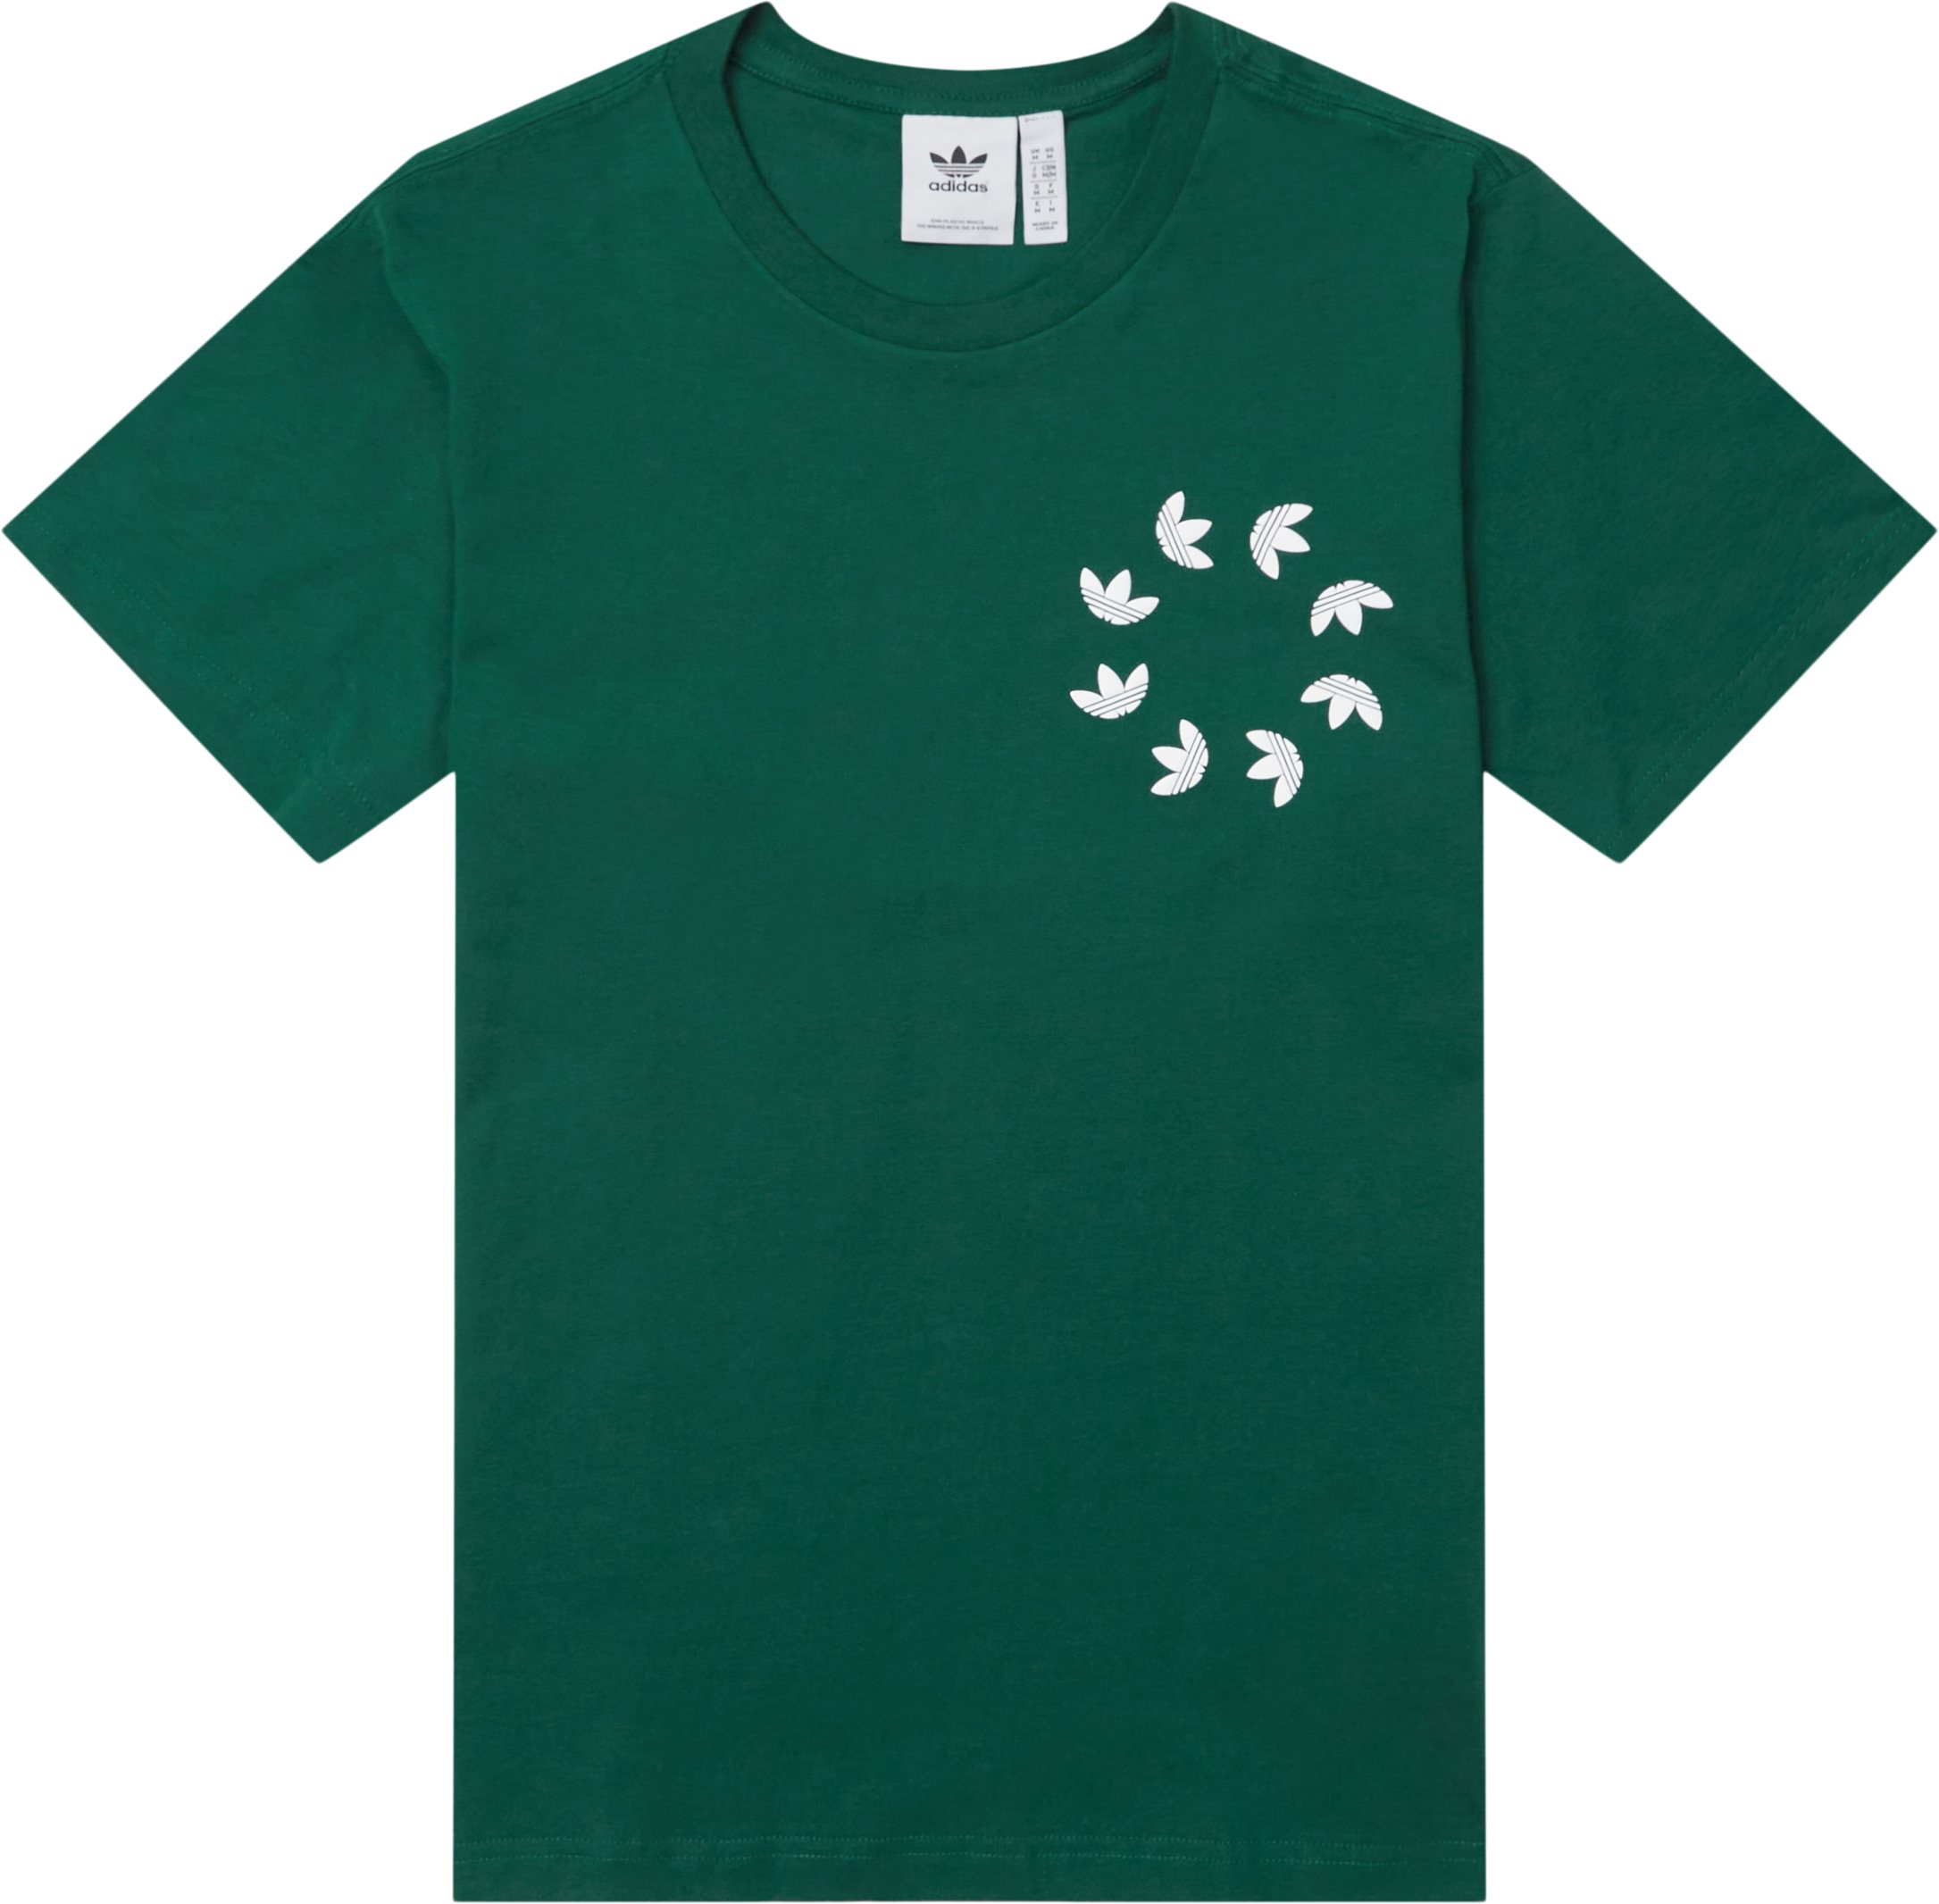 Bld Tee - T-shirts - Regular fit - Grön